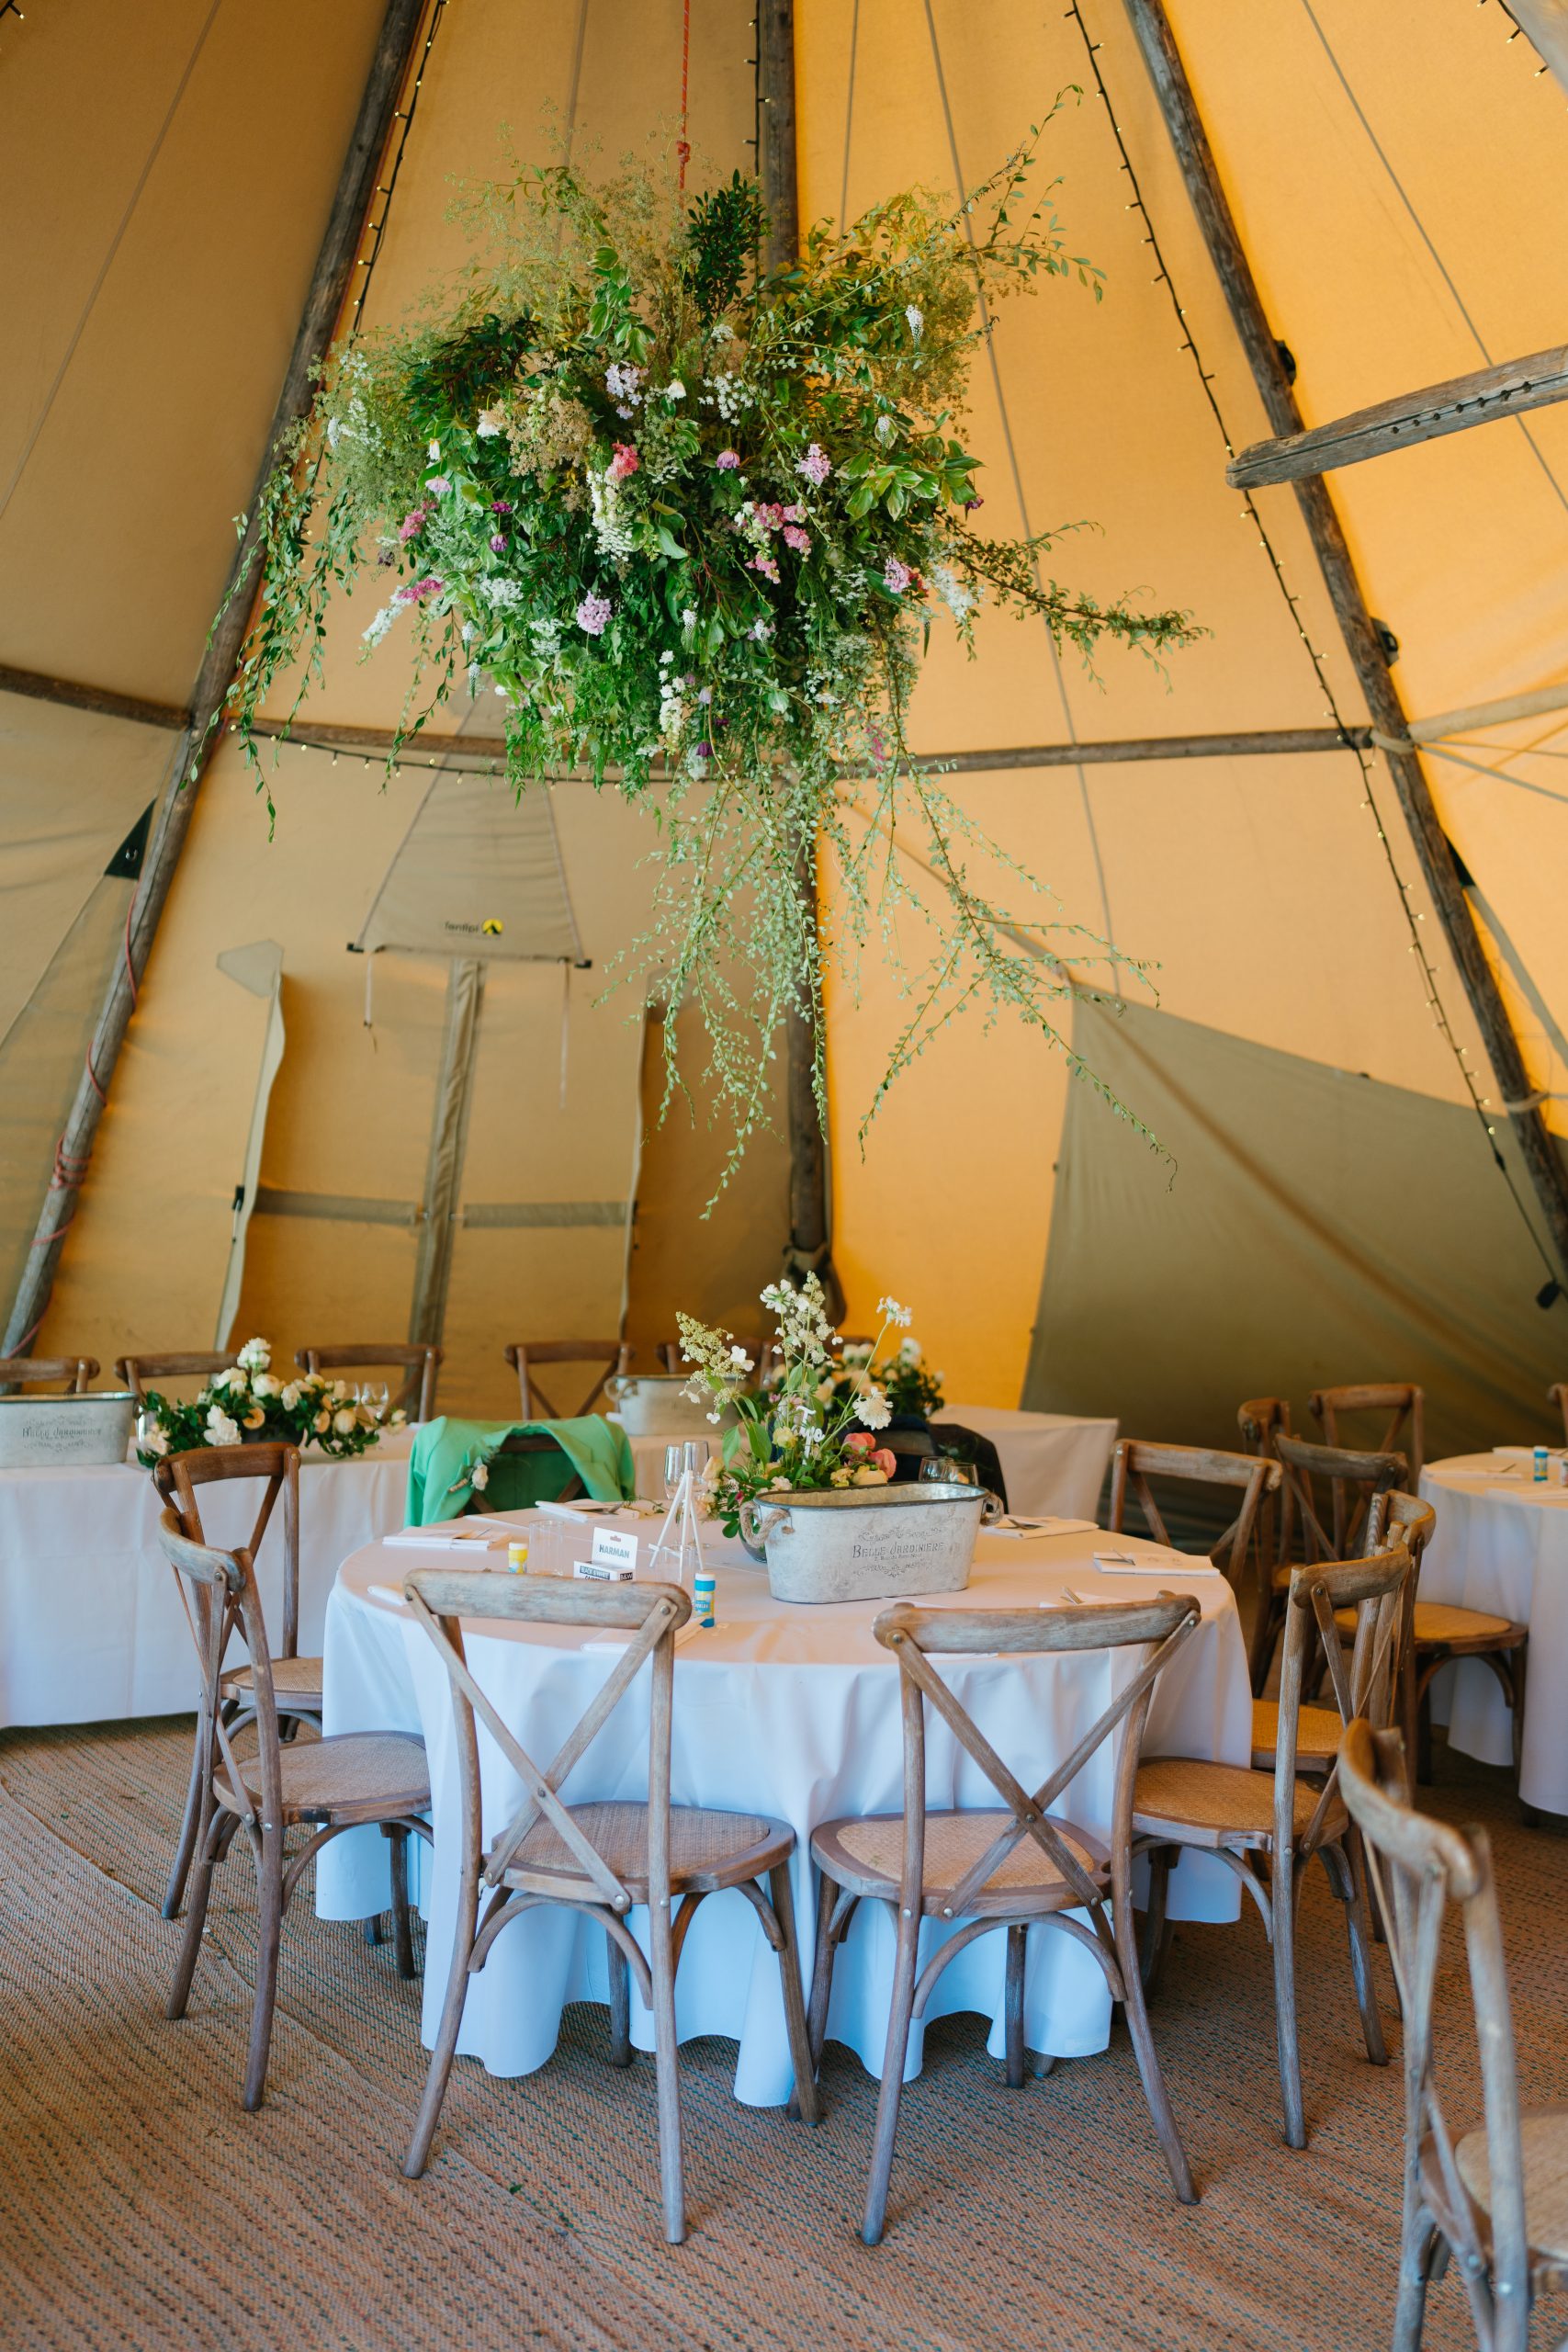 Tipi Wedding Venue, Quex. Image of table set under a Tipi, for a Tipi outdoor wedding.